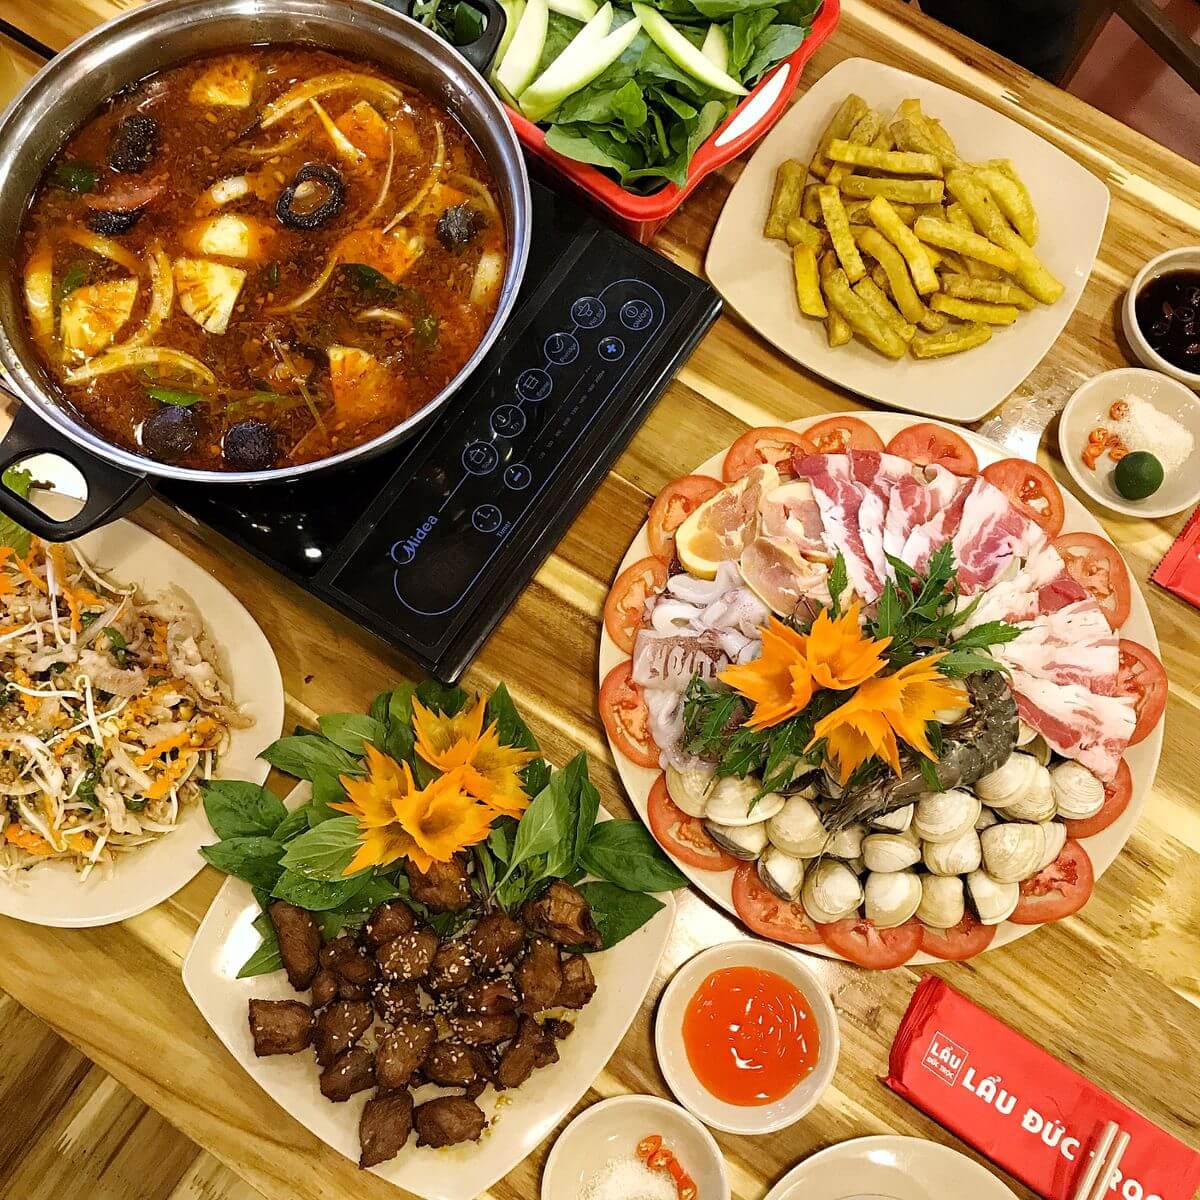 Quán ăn ngon quận Tây Hồ Hà Nội